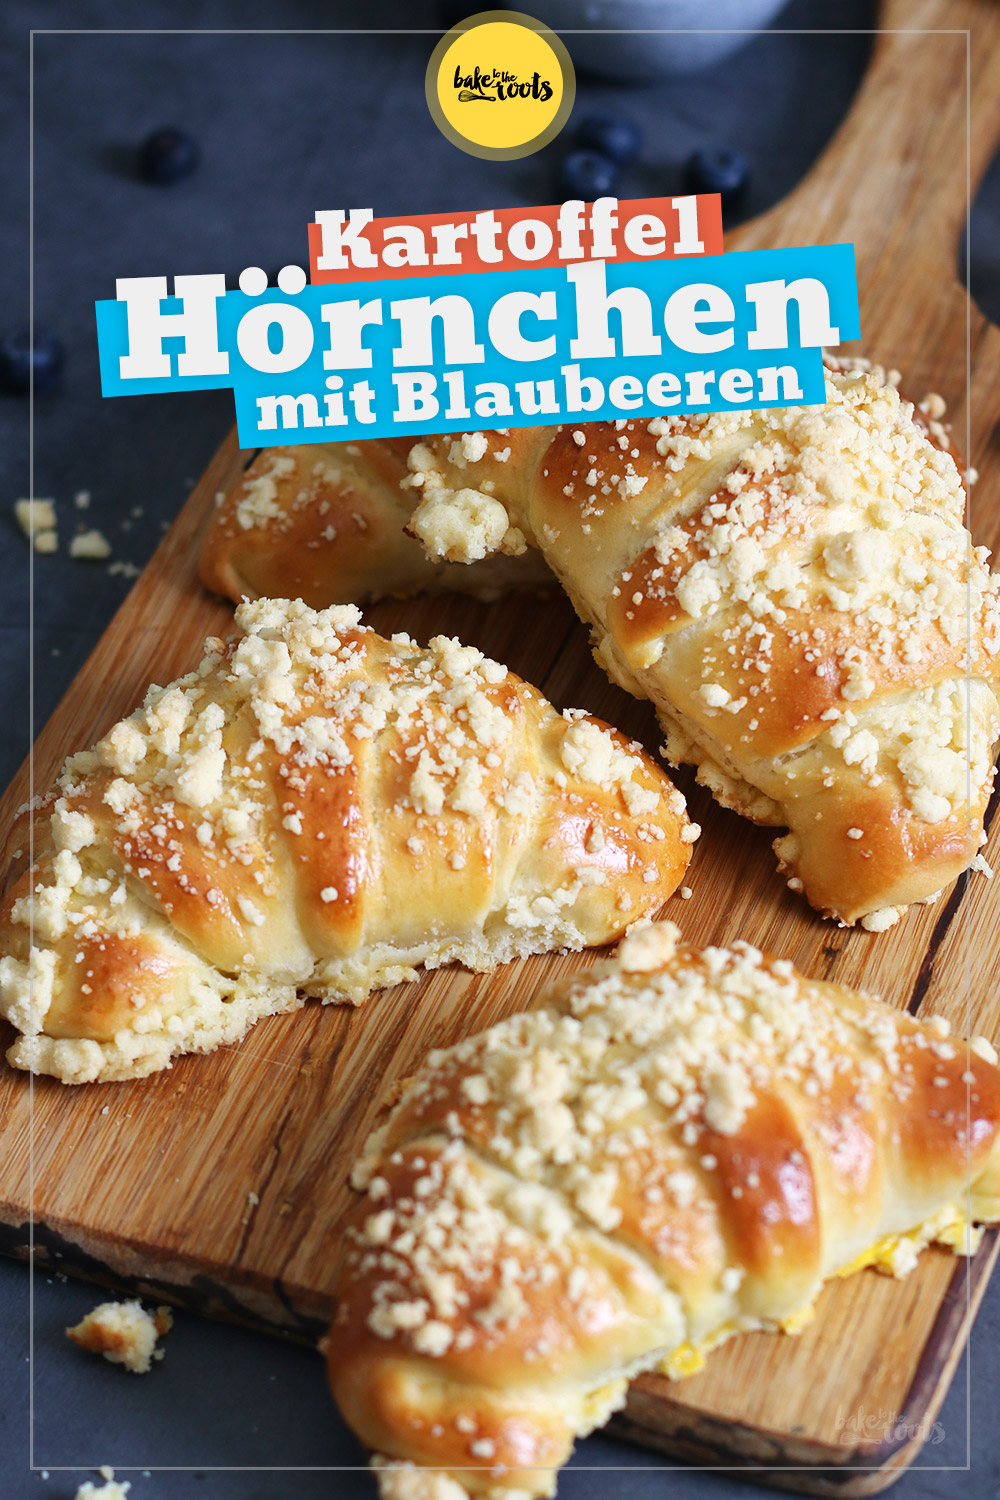 Kartoffel Hörnchen mit Blaubeeren & Streuseln | Bake to the roots